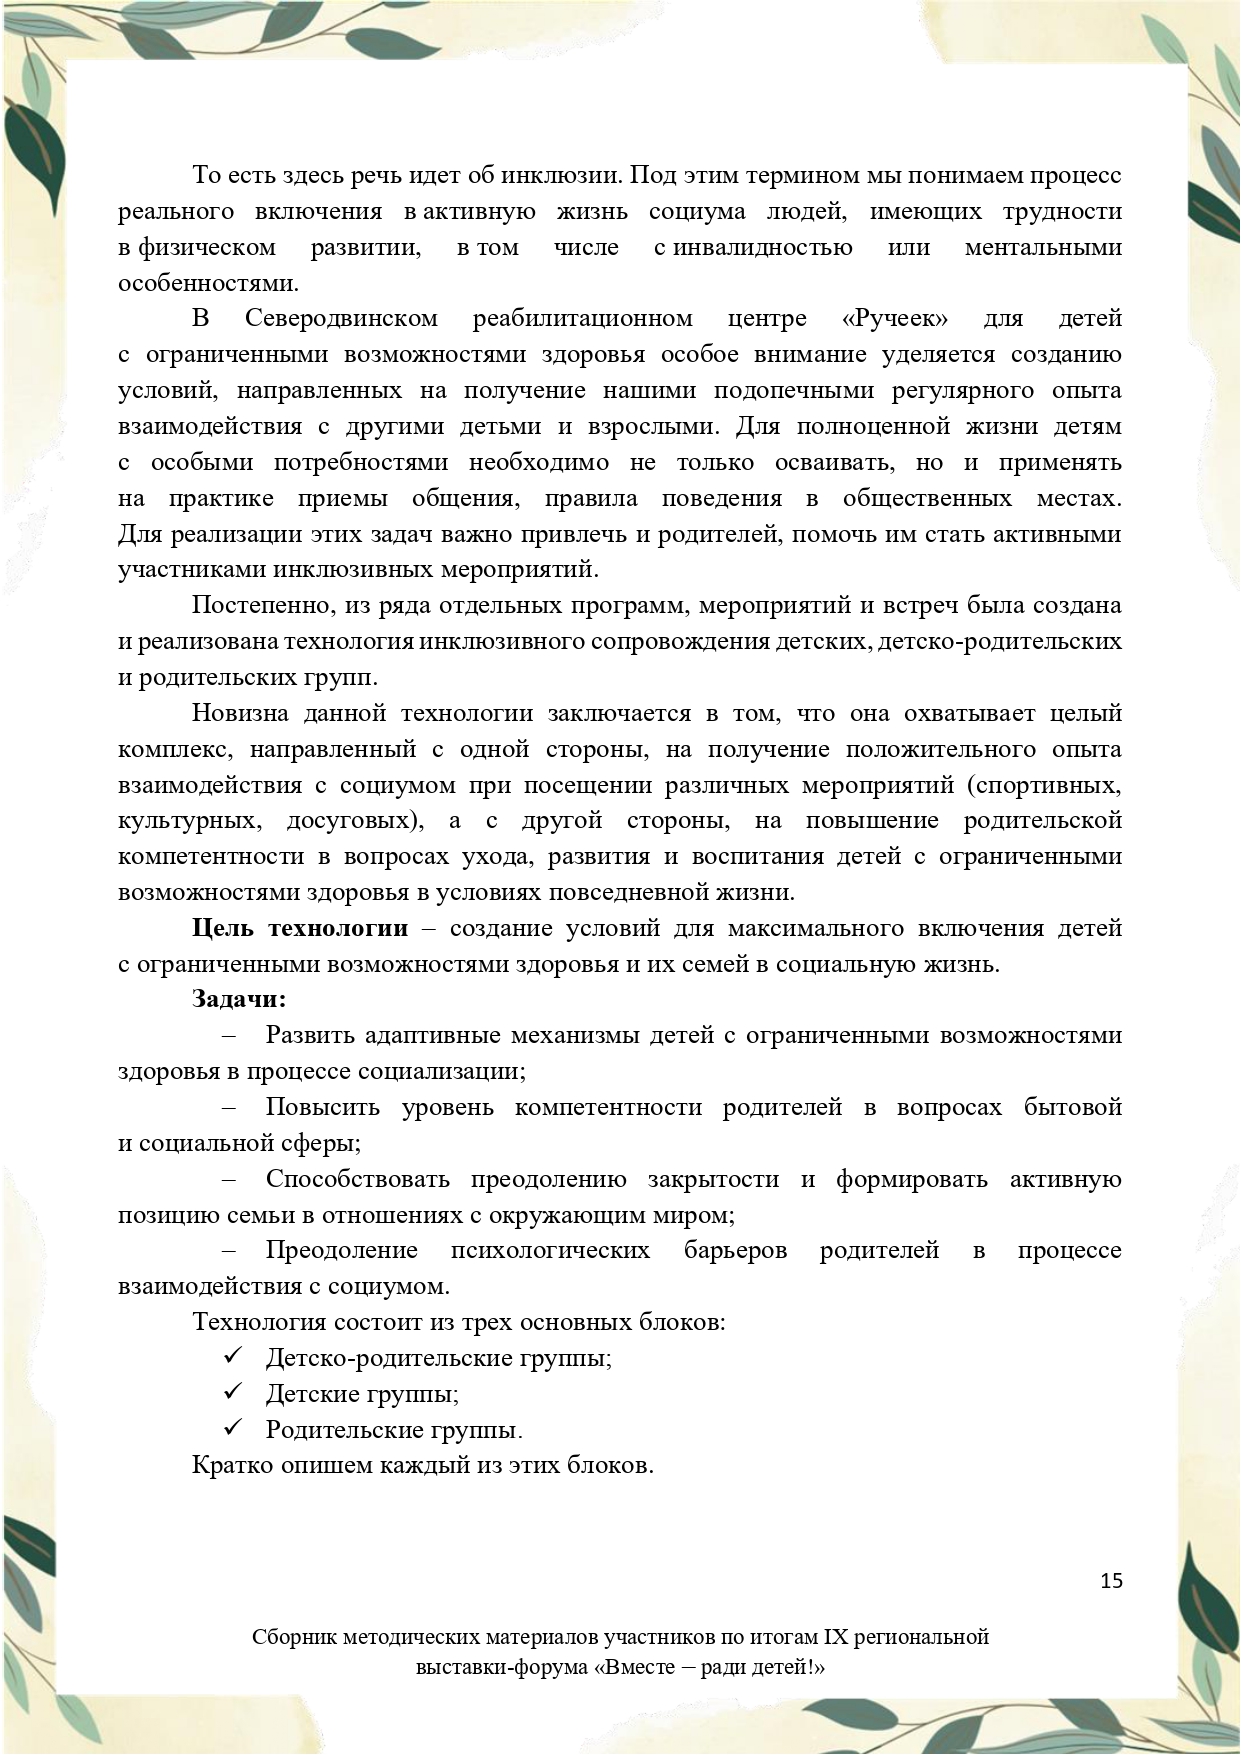 Sbornik_metodicheskikh_materialov_uchastnikov_IX_regionalnoy_vystavki-foruma_Vmeste__radi_detey_33__2023_page-0015